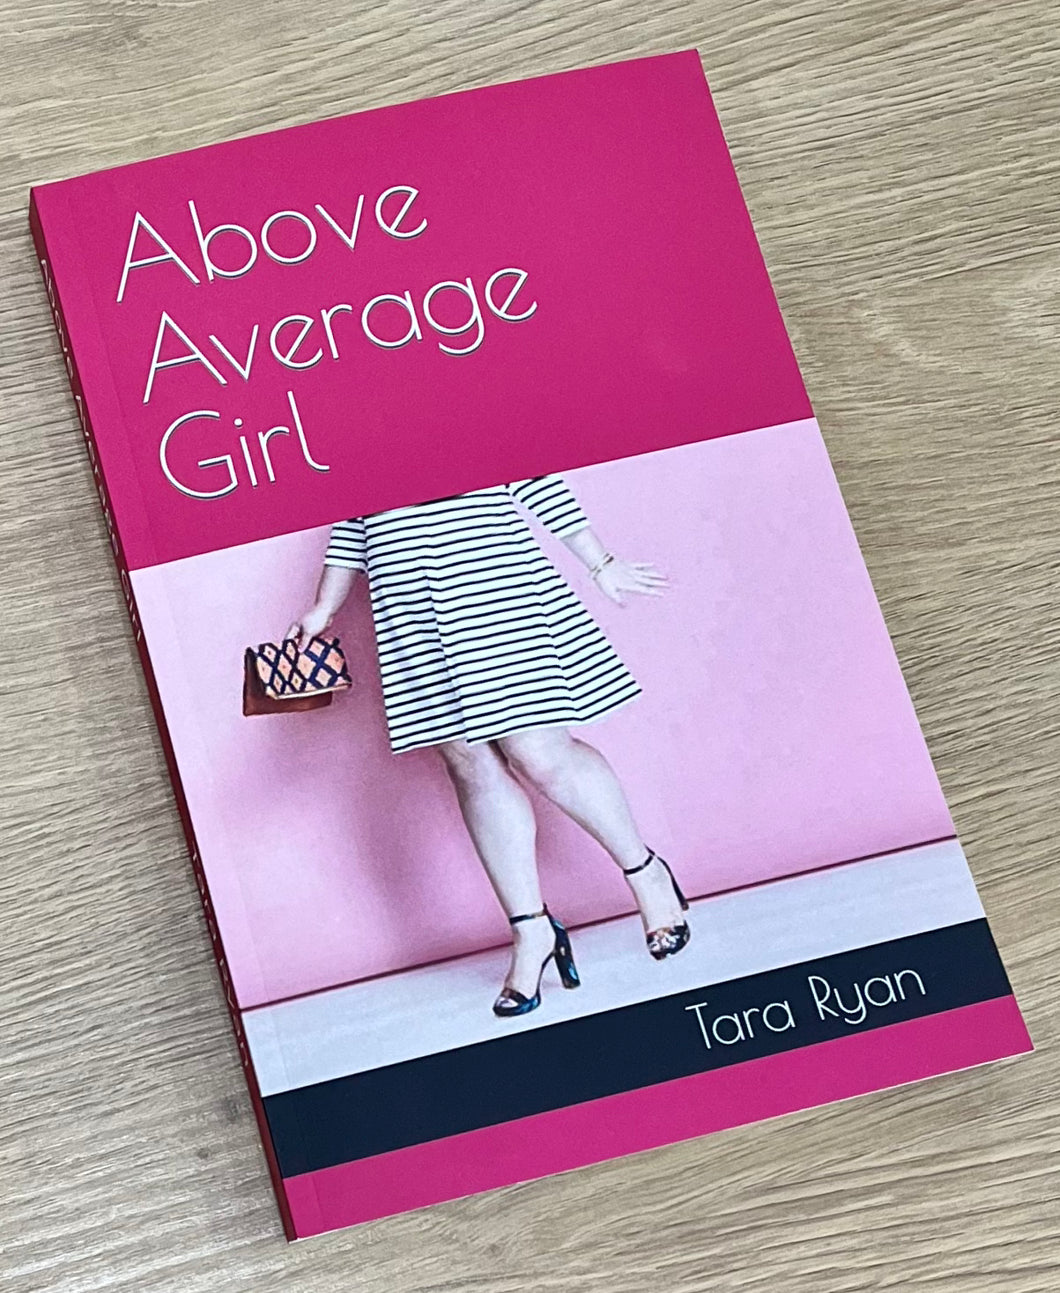 Above Average Girl by Tara Ryan (Paperback)